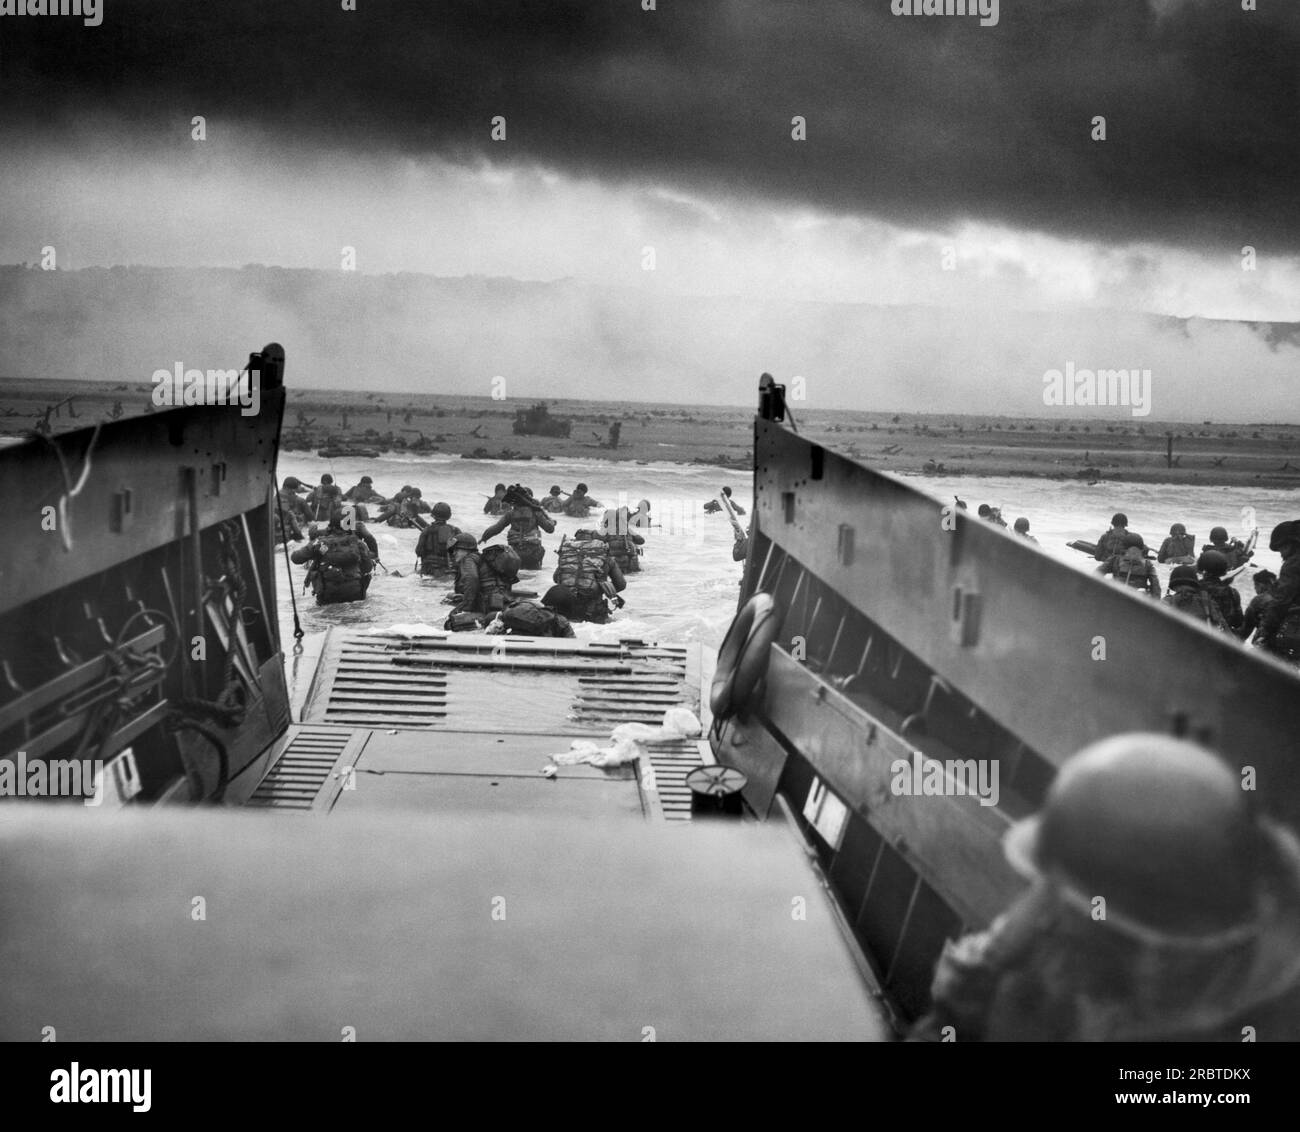 Normandie, France : 6 juin 1944 Un véhicule de débarquement, personnel, (LCVP), l'USS Samuel Chase, débarque les troupes de la compagnie E, 16e infanterie, 1e division d'infanterie (la Big Red One) sur la section Fox Green d'Omaha Beach le matin du jour J. Les soldats américains rencontrent des tirs de mitrailleuses flétrissants de la 352e division allemande alors qu'ils pataugent à terre. Lors du débarquement initial, les deux tiers de la compagnie E sont victimes. Photo de Robert Sargent, États-Unis Garde-côtes. Banque D'Images